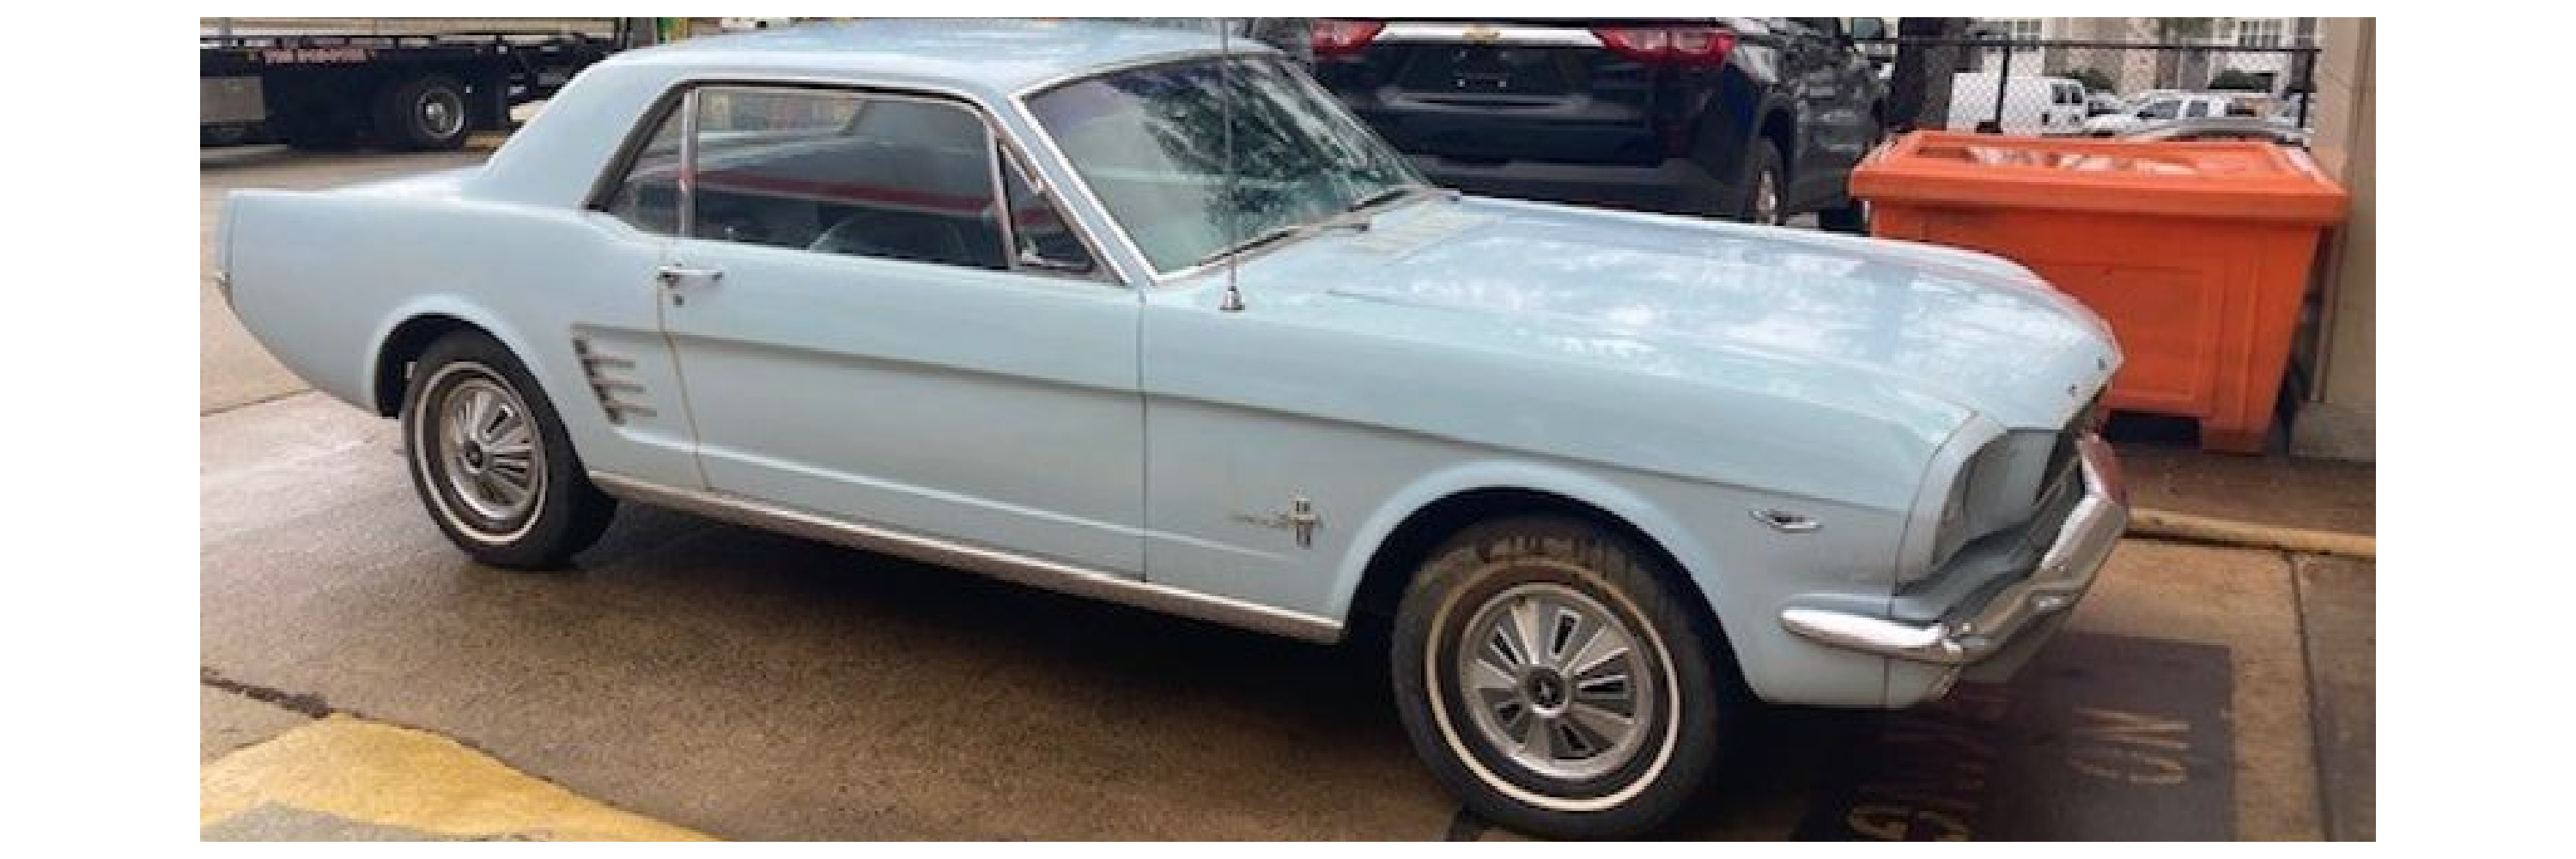 1966 Ford MustangSeptember 15th, 2022